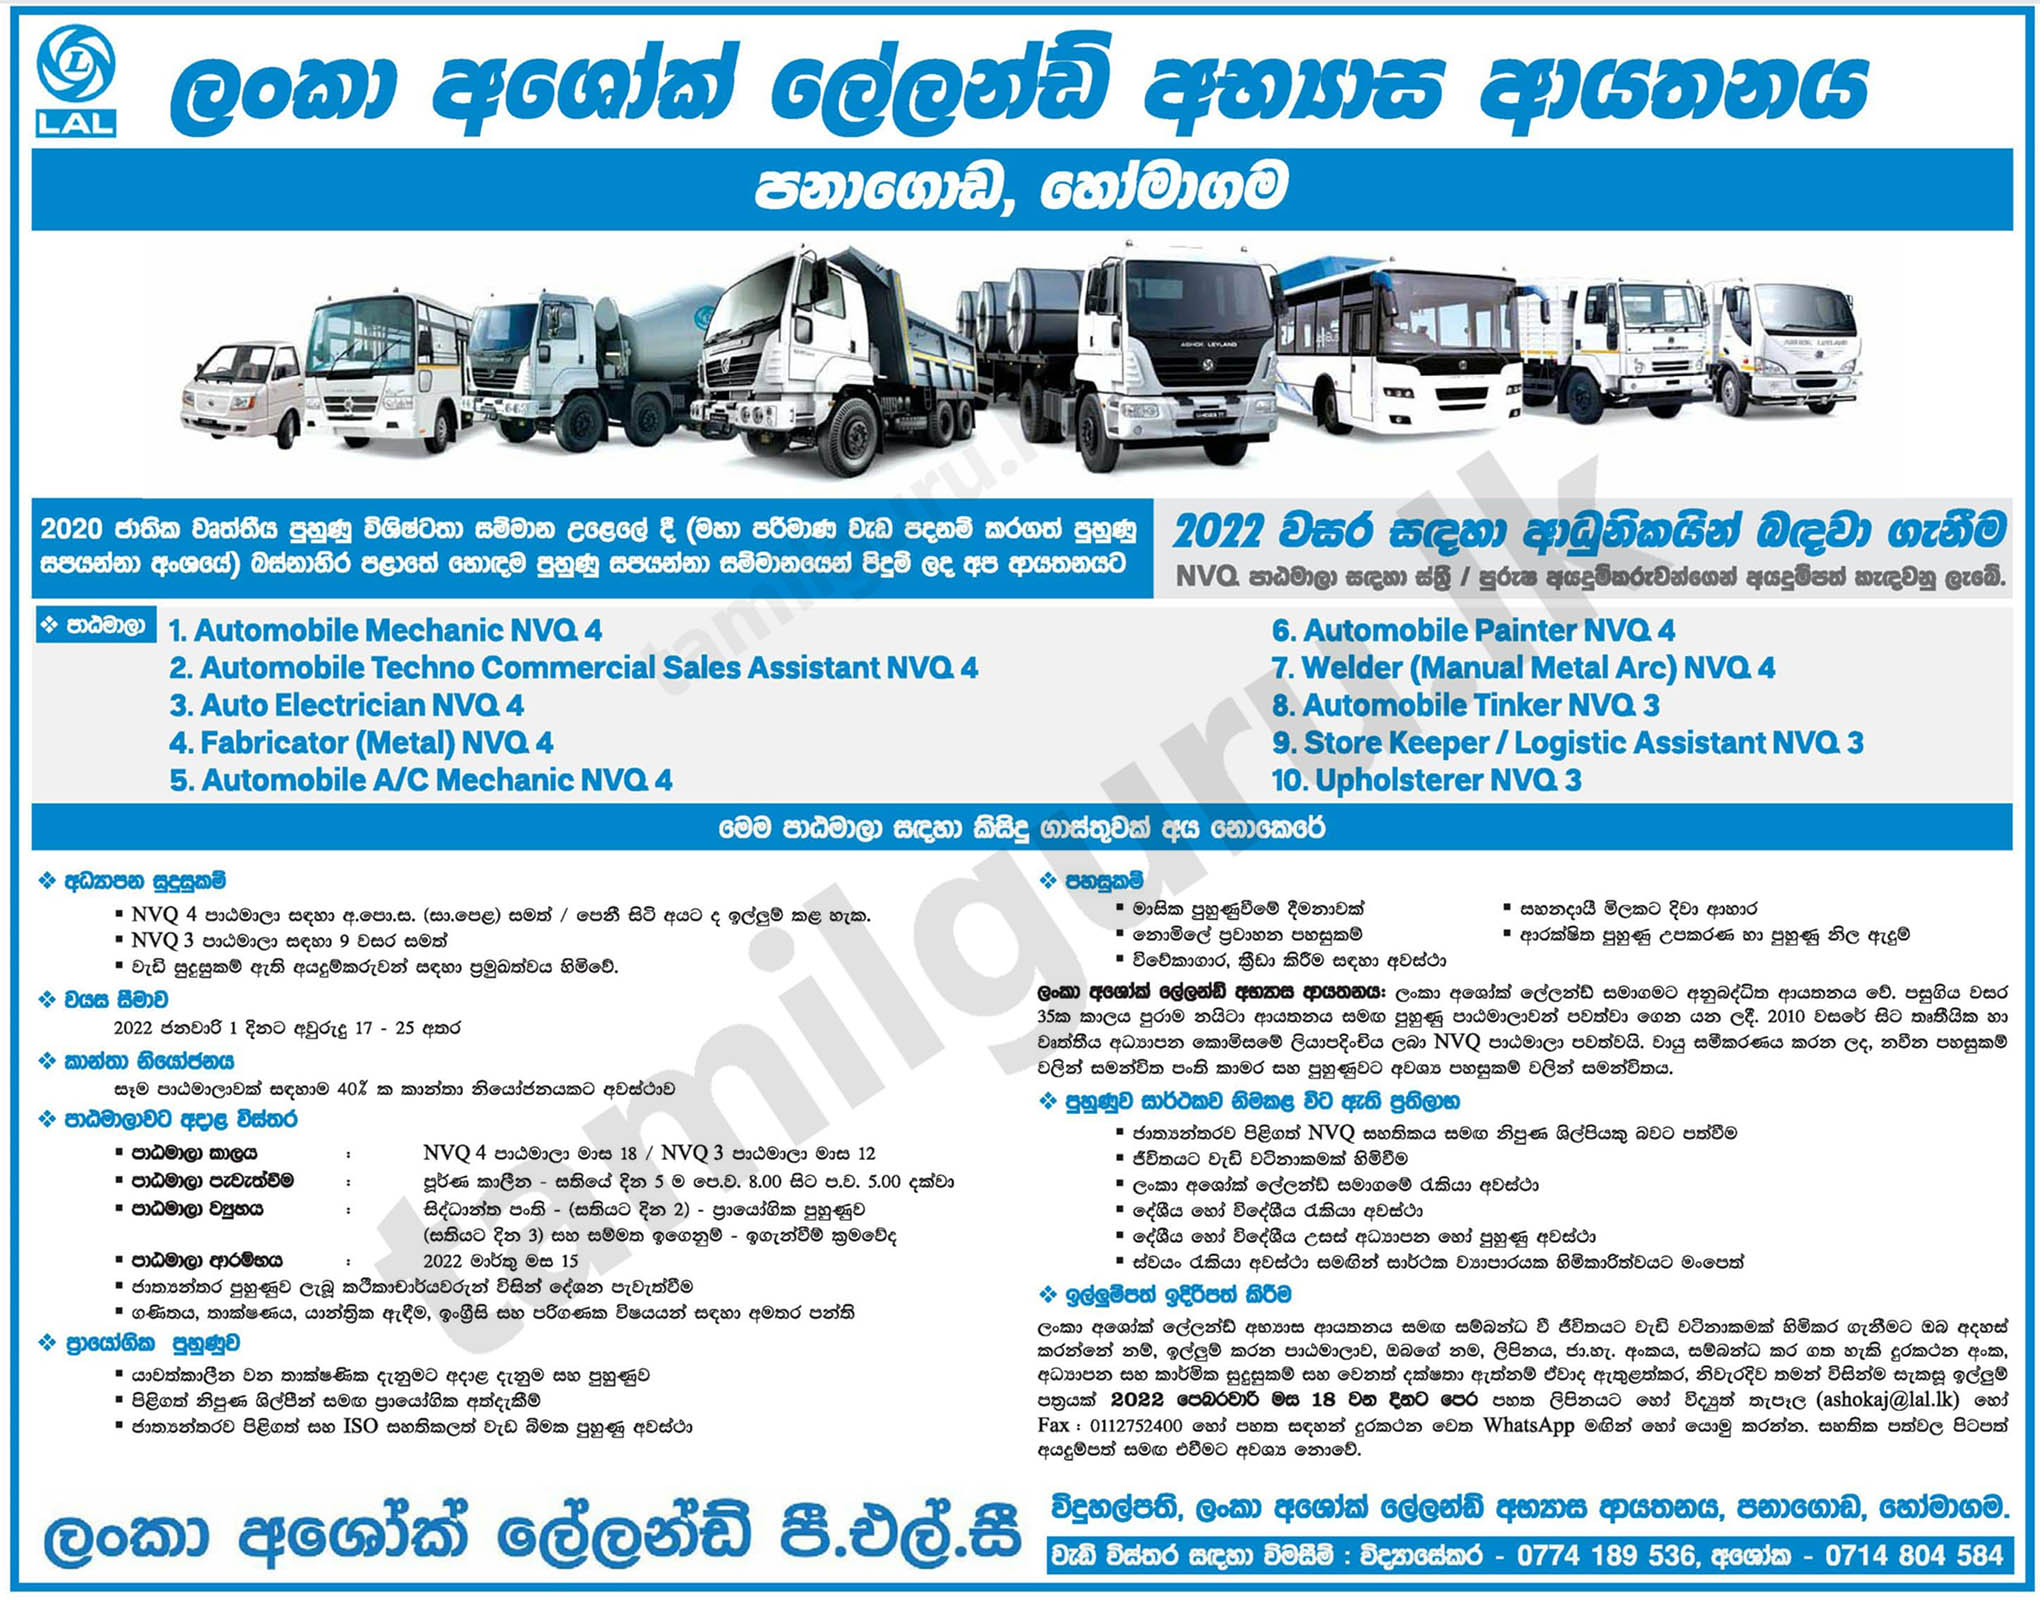 Calling Applications for Admission to Lanka Ashok Leyland Training Institute NVQ Courses - 2022 (Student Intake) - Lanka Ashok Leyland PLC